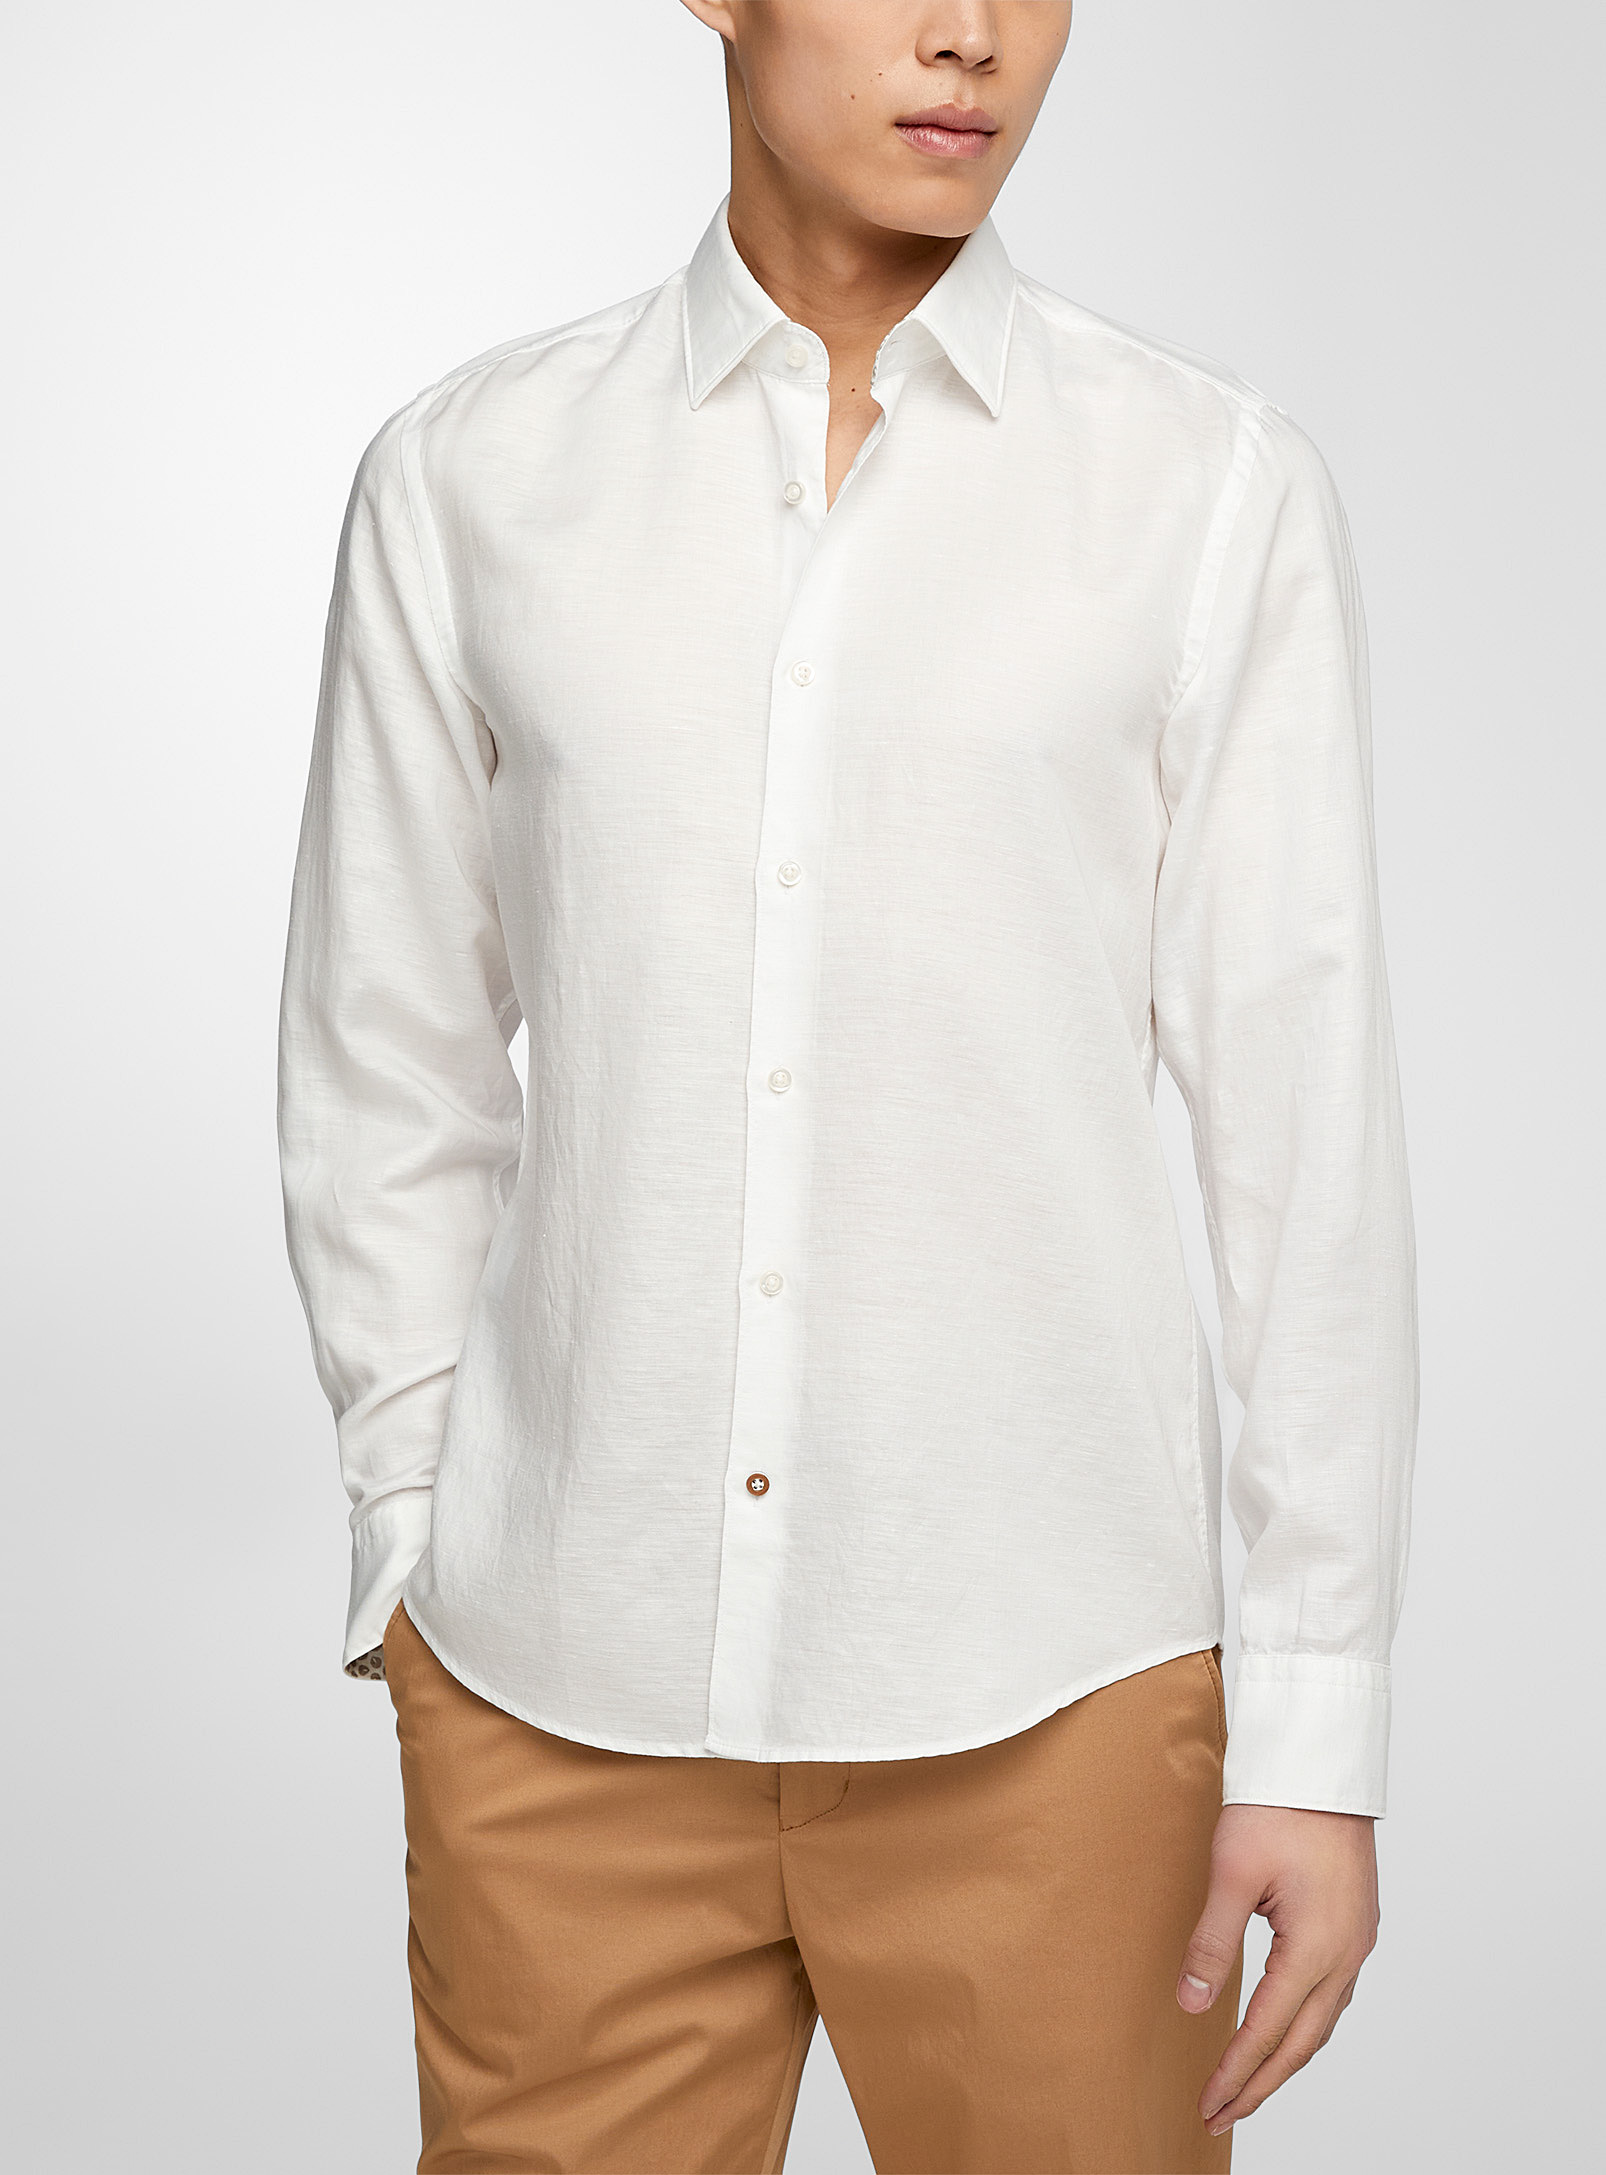 Hugo Boss White Linen Blend Shirt